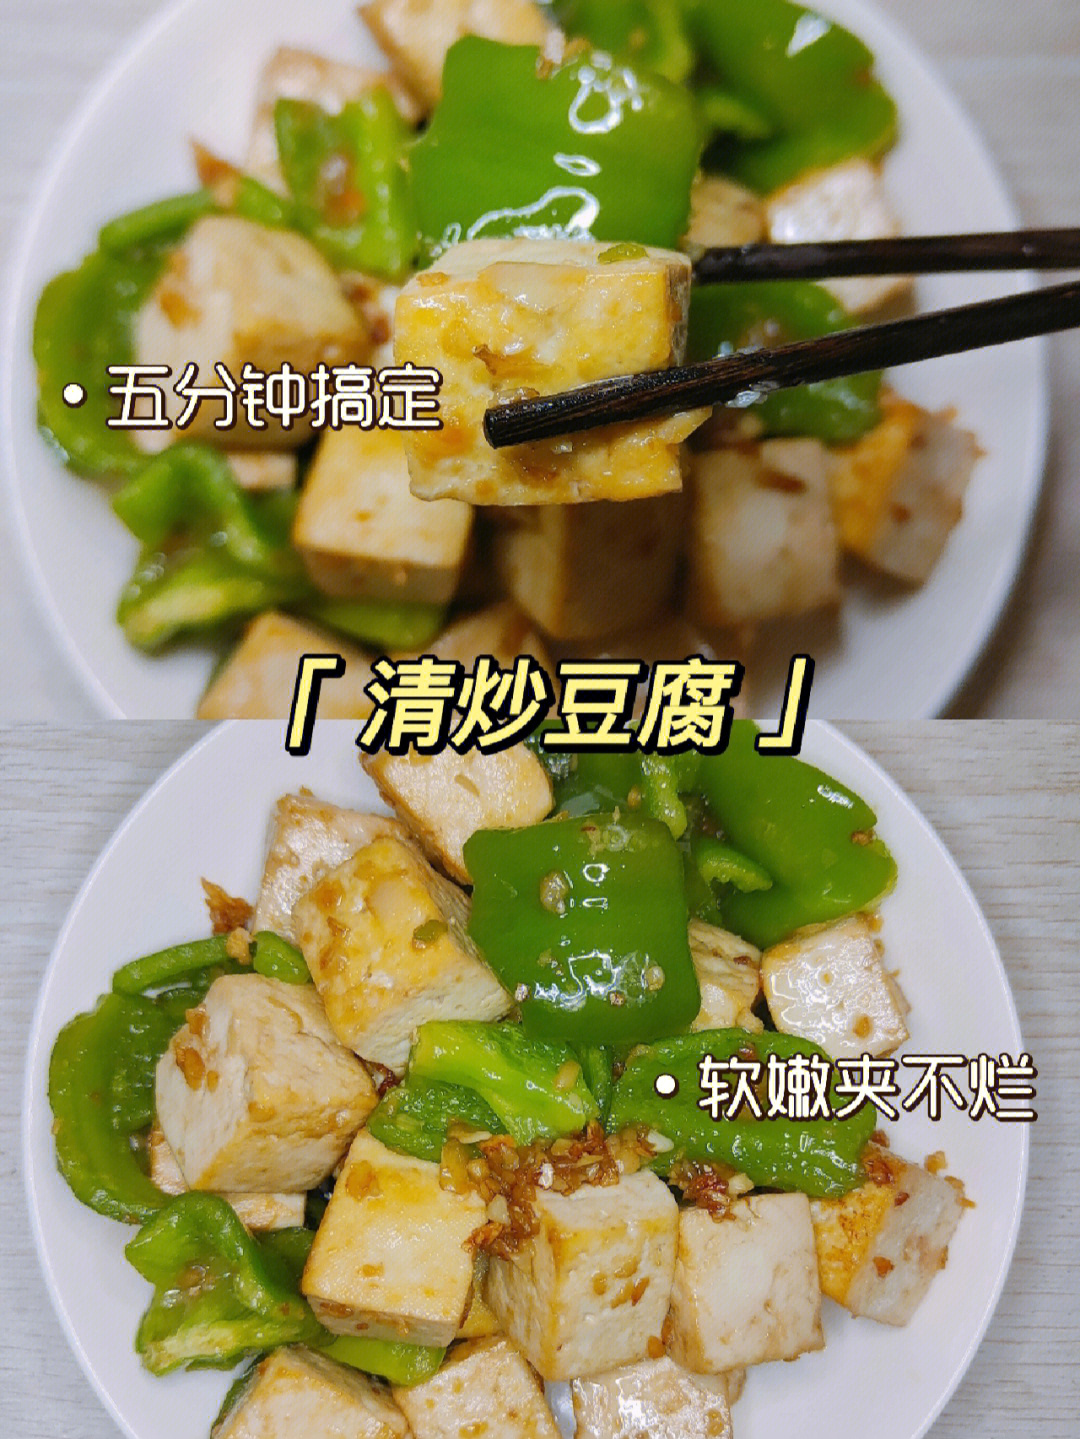 清炒豆腐丨强烈推荐一定要做的懒人菜!